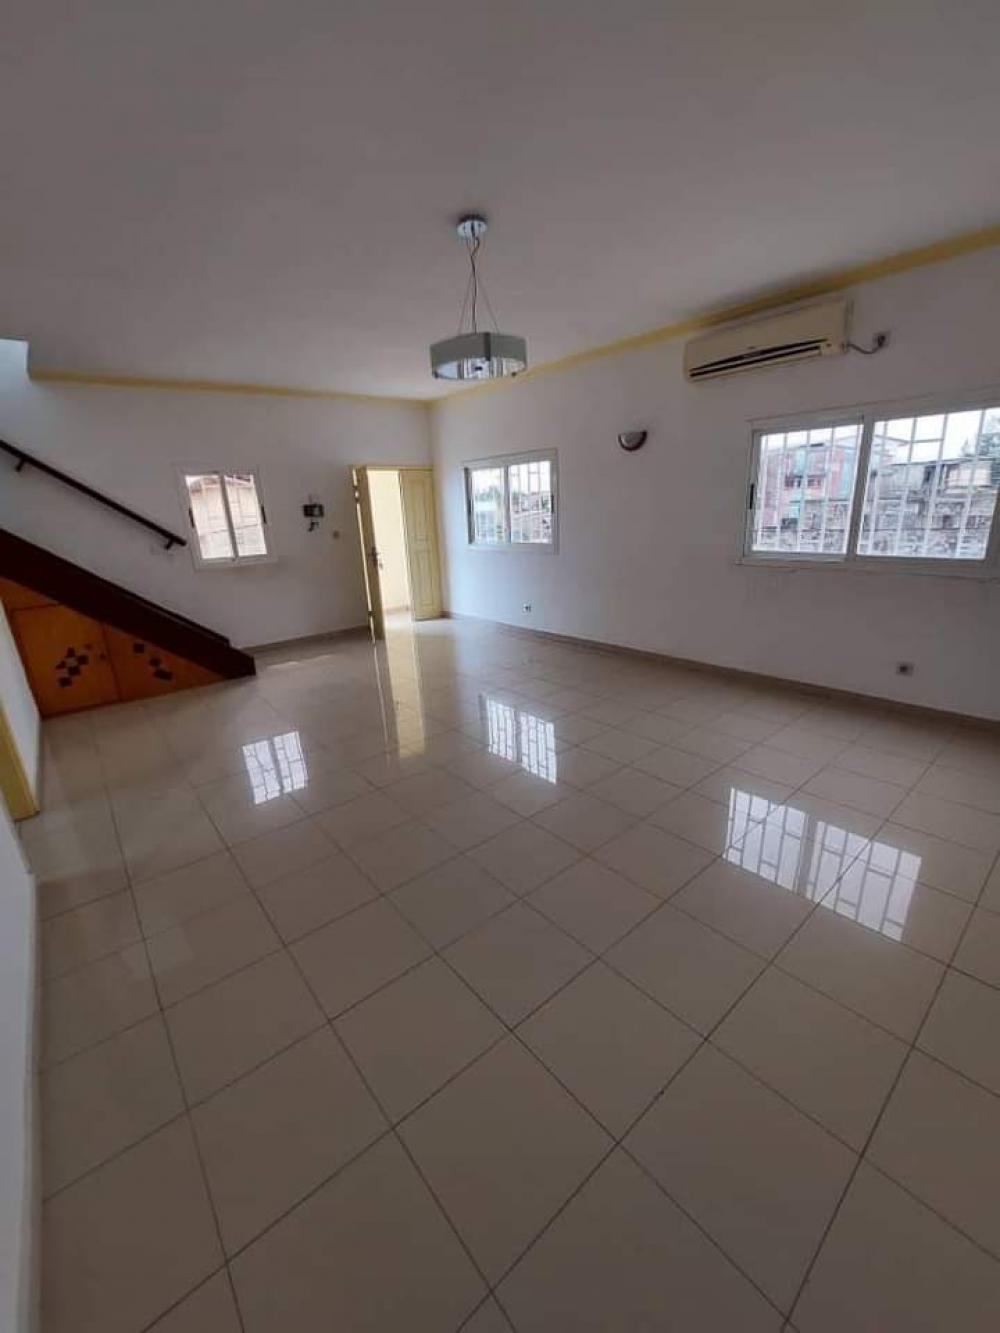 Appartement 3 chambres à louer à Libreville, Nzeng-Ayong. Prix: 300 000 FcfaPhoto Annonce Gabonhome 0